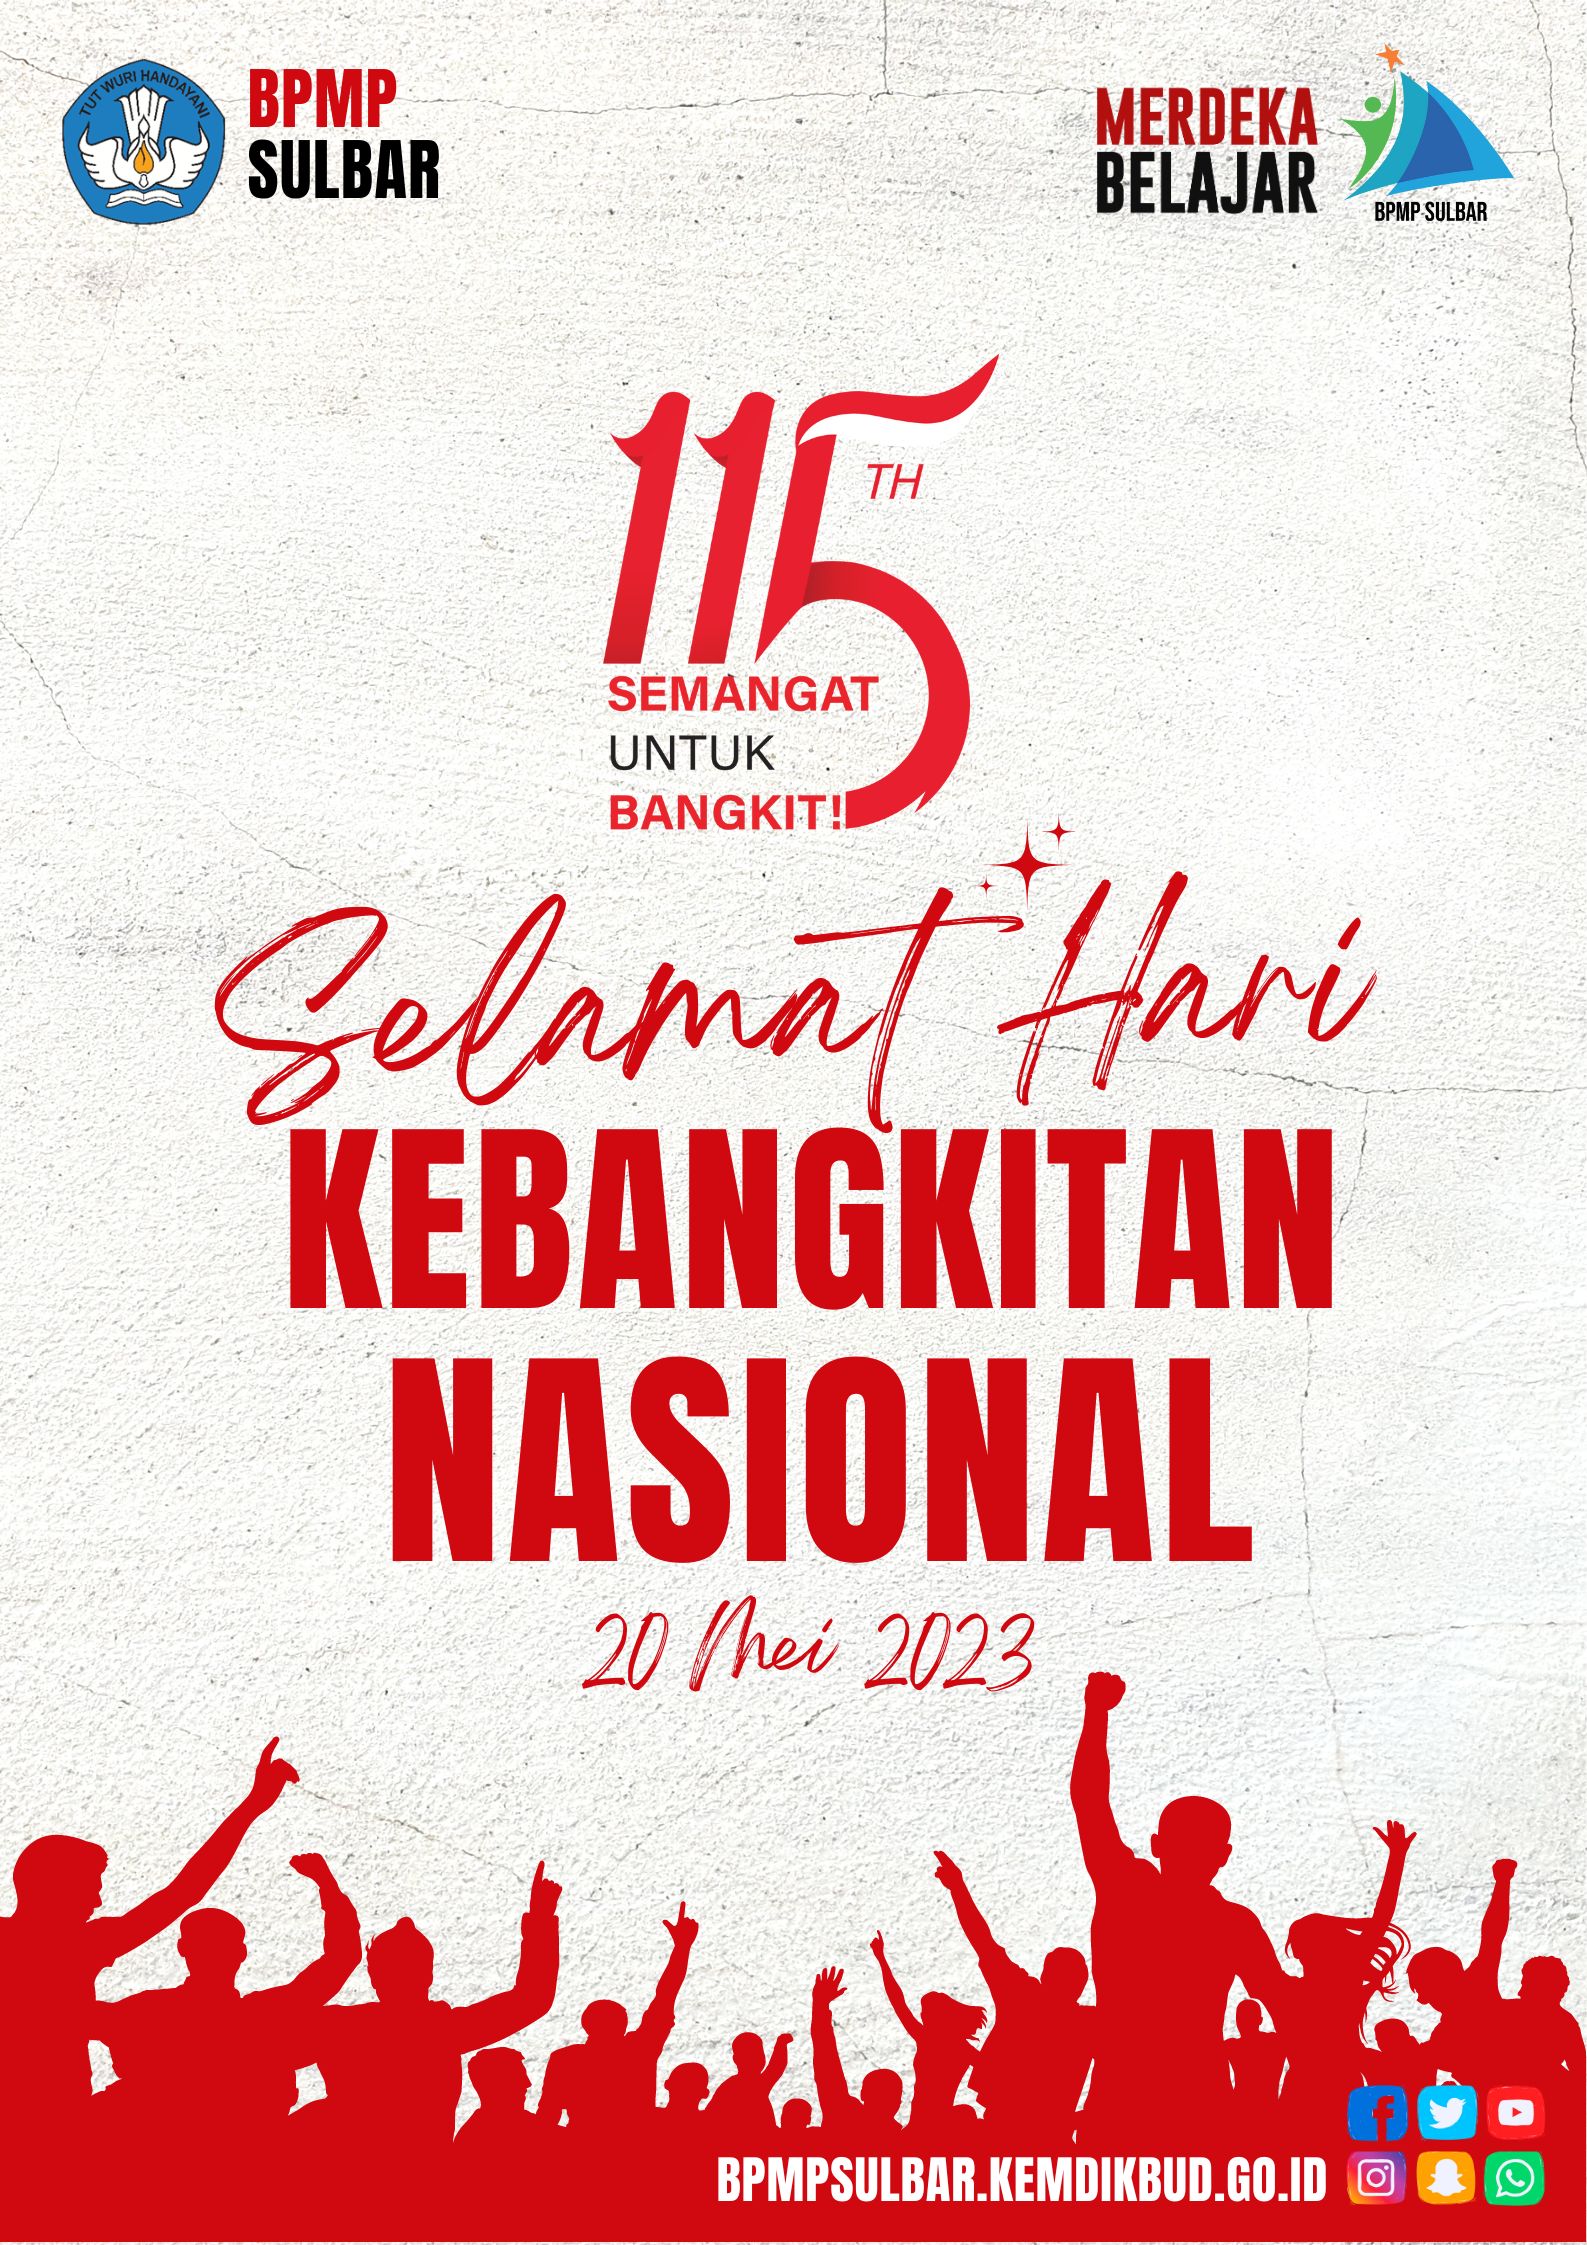 Hari Kebangkitan Nasional Greeting Message Poster(1)